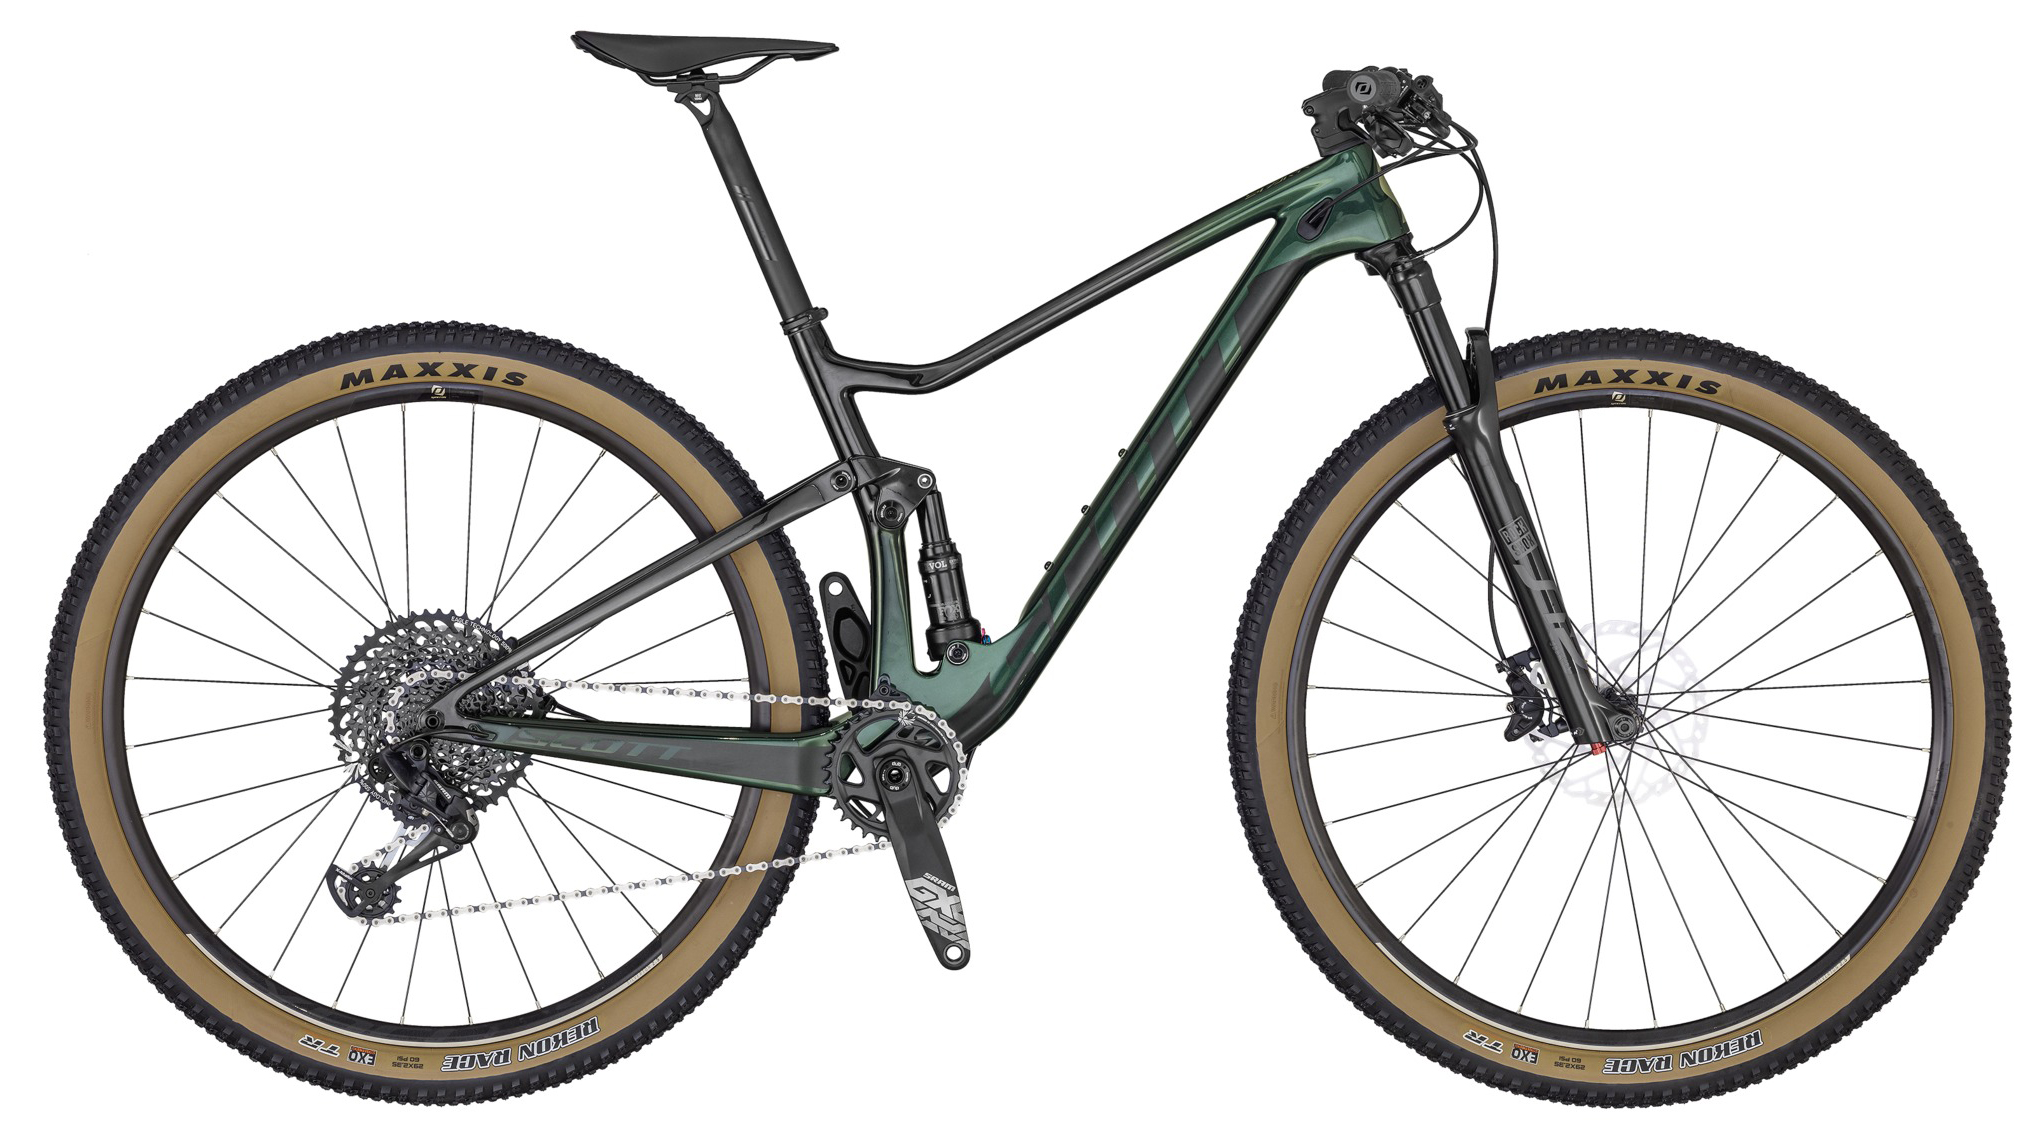  Отзывы о Двухподвесном велосипеде Scott Spark RC 900 Team Green 2020